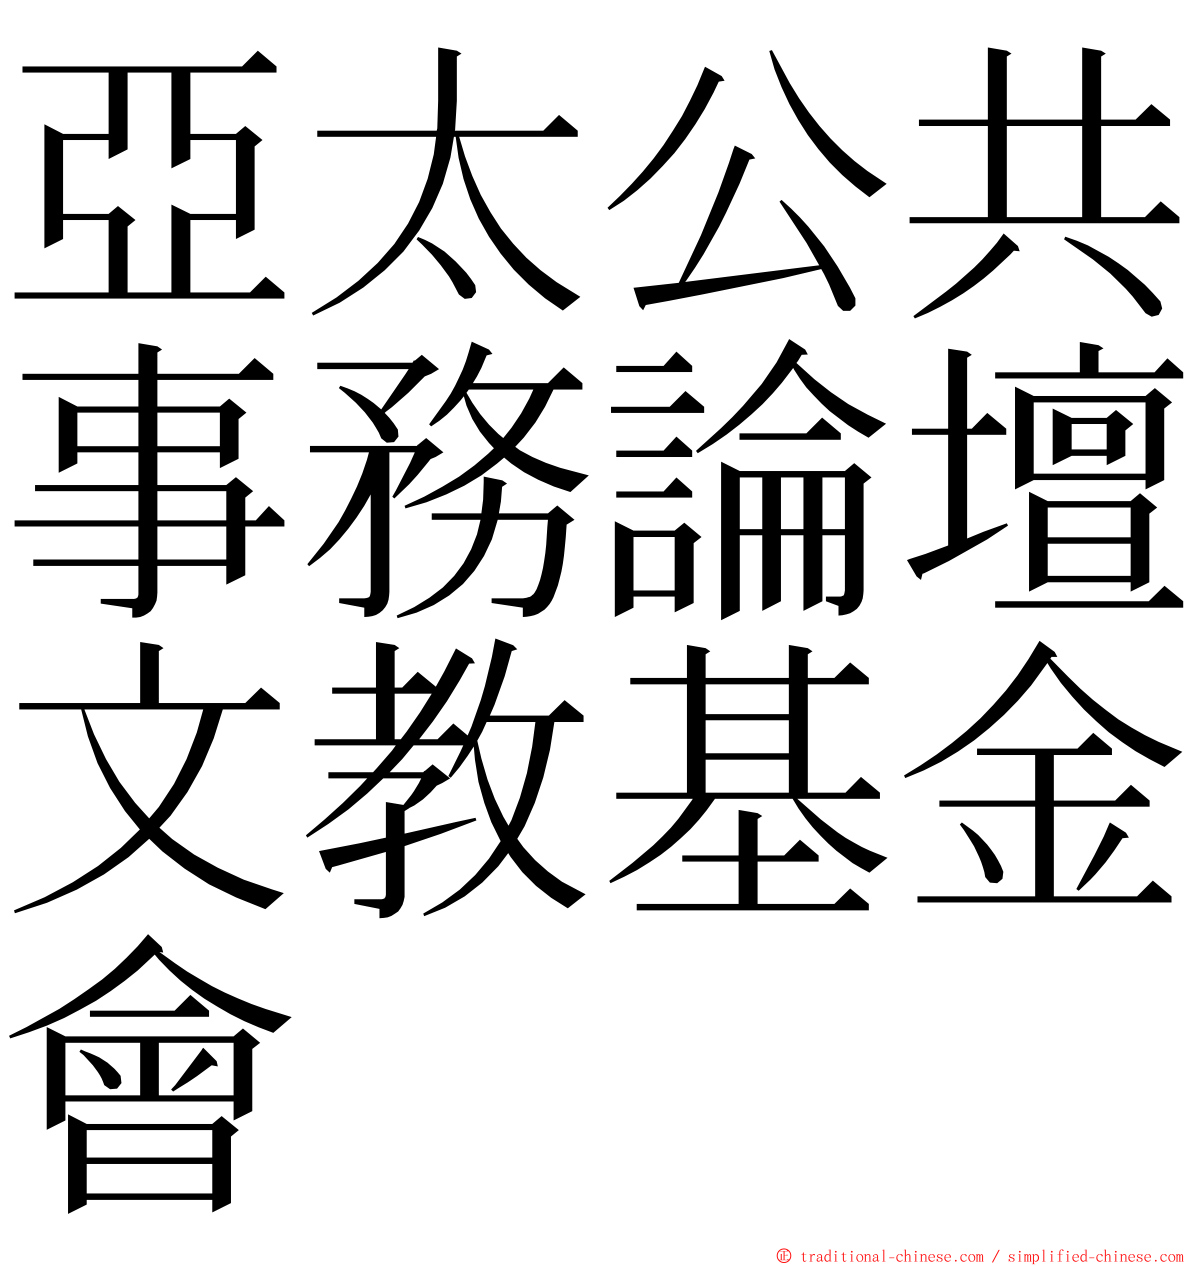 亞太公共事務論壇文教基金會 ming font